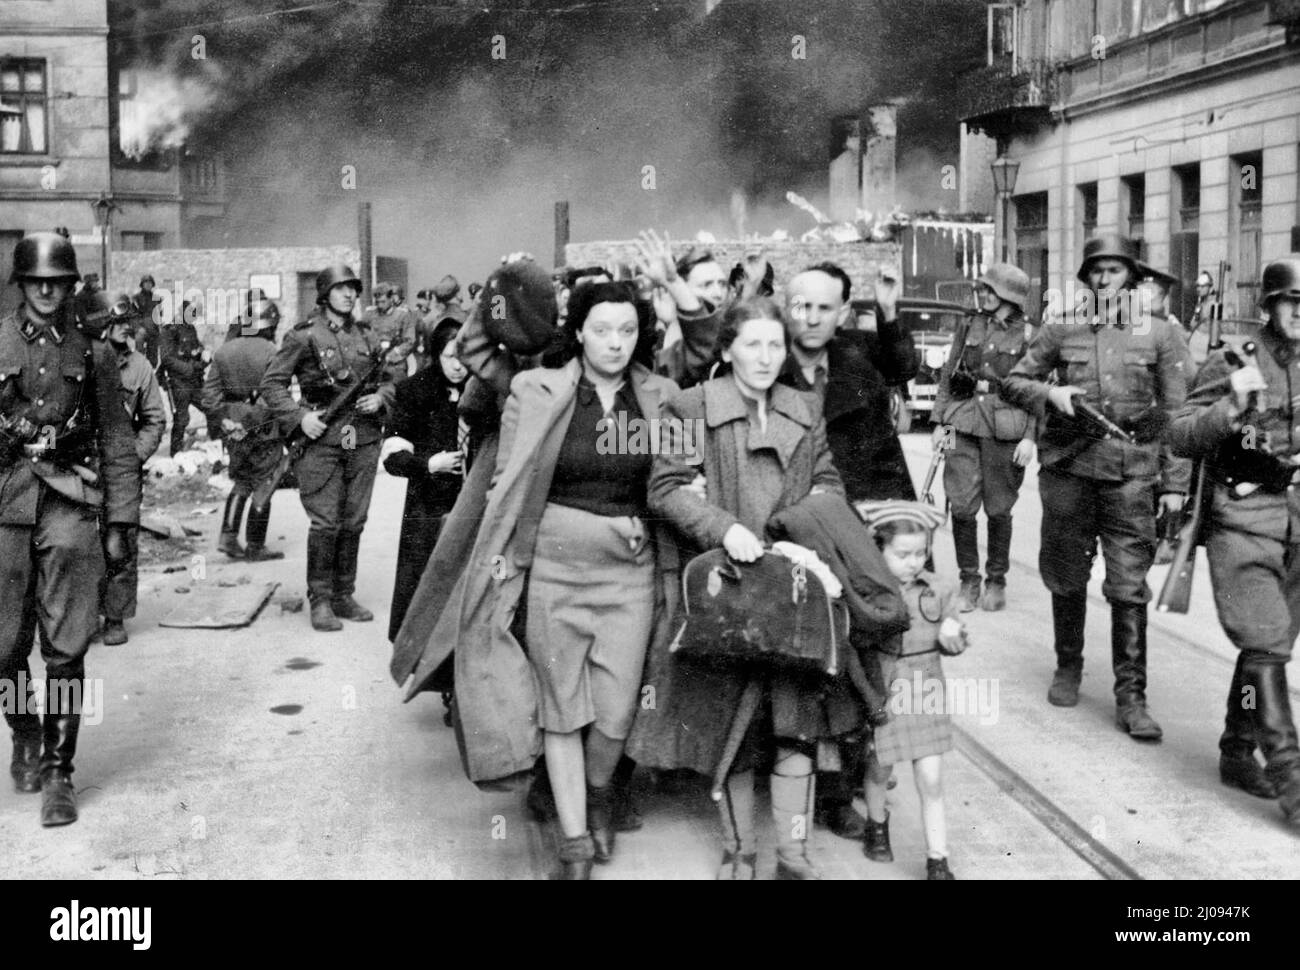 Aufstand im Warschauer Ghetto - Unterdrückung des Warschauer Ghettoaufstands - die gefangenen Juden werden von deutschen Waffen-SS-Soldaten zur Deportationsstelle geführt Stockfoto